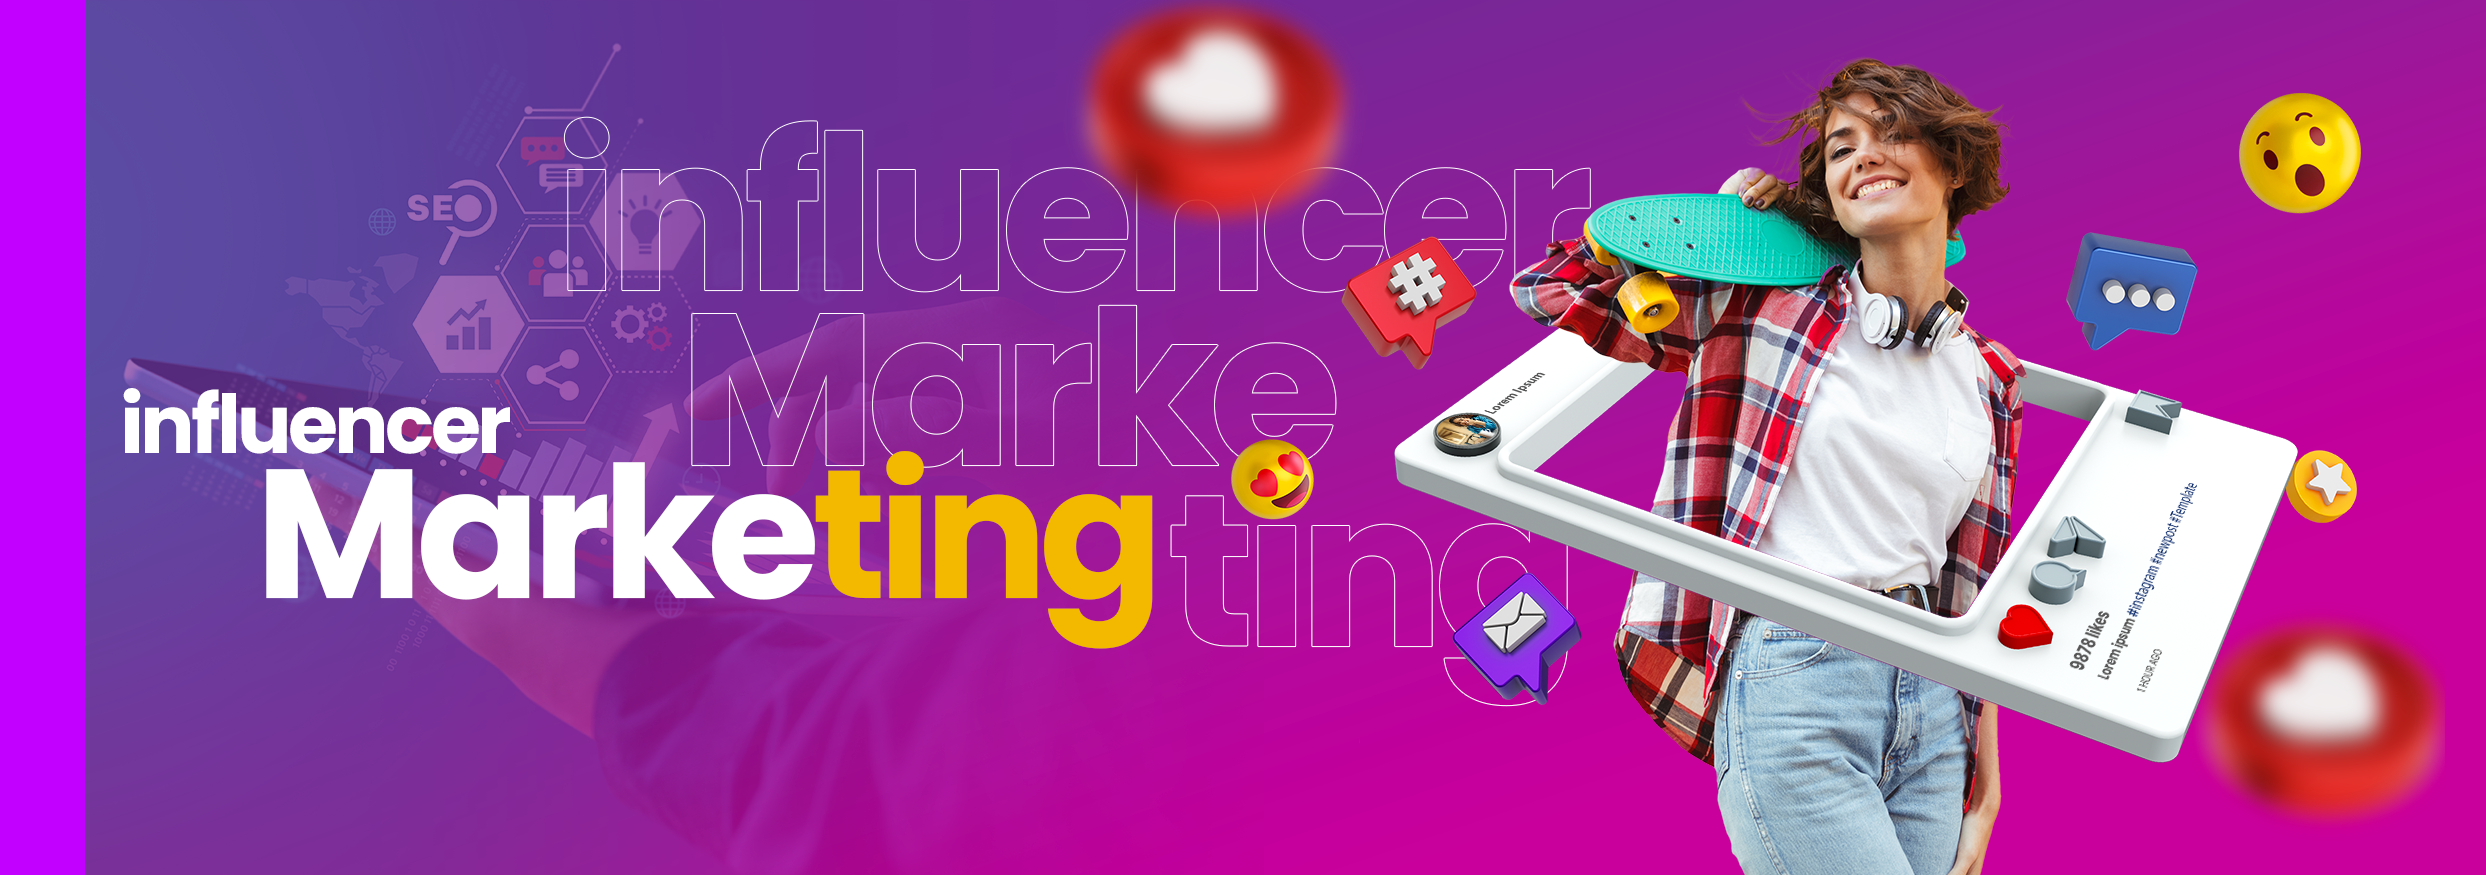 Banner de marketing e influencers